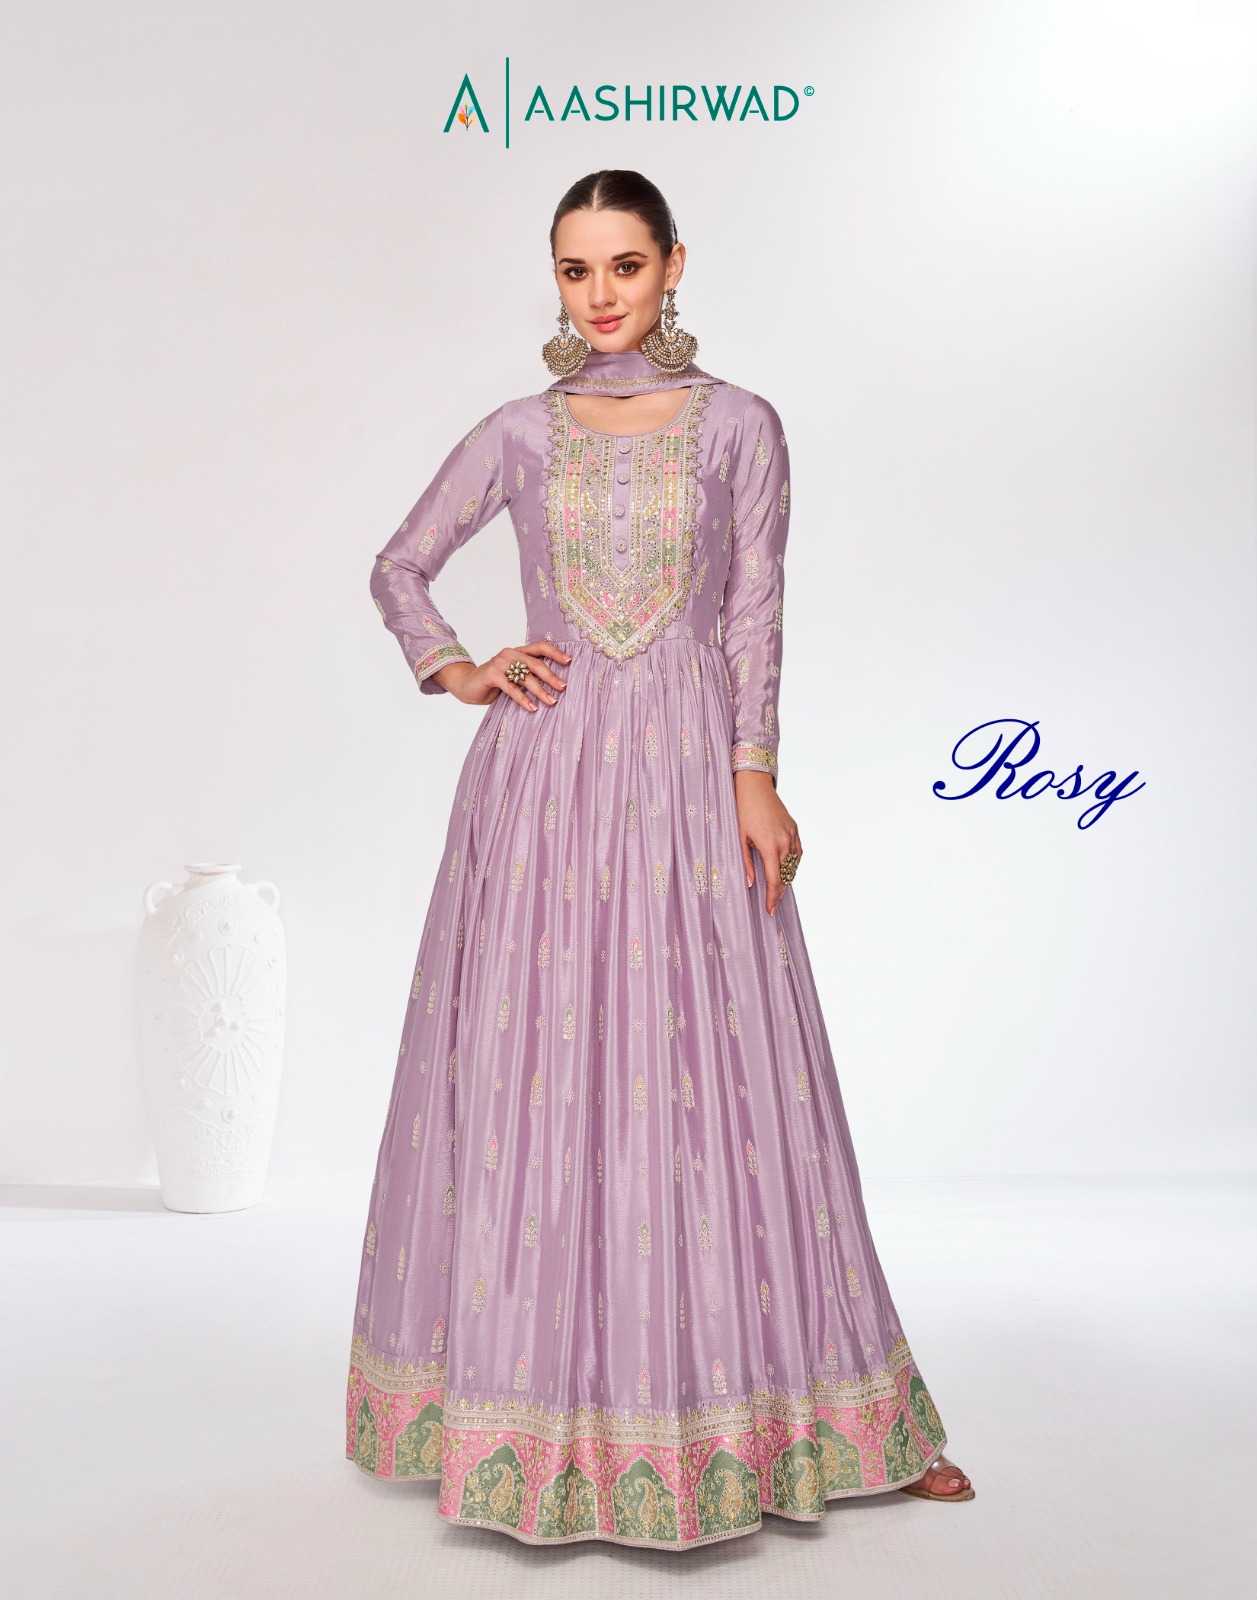 aashirwad creation rosy fancy chinnon wedding style fancy full stitch long salwar kameez